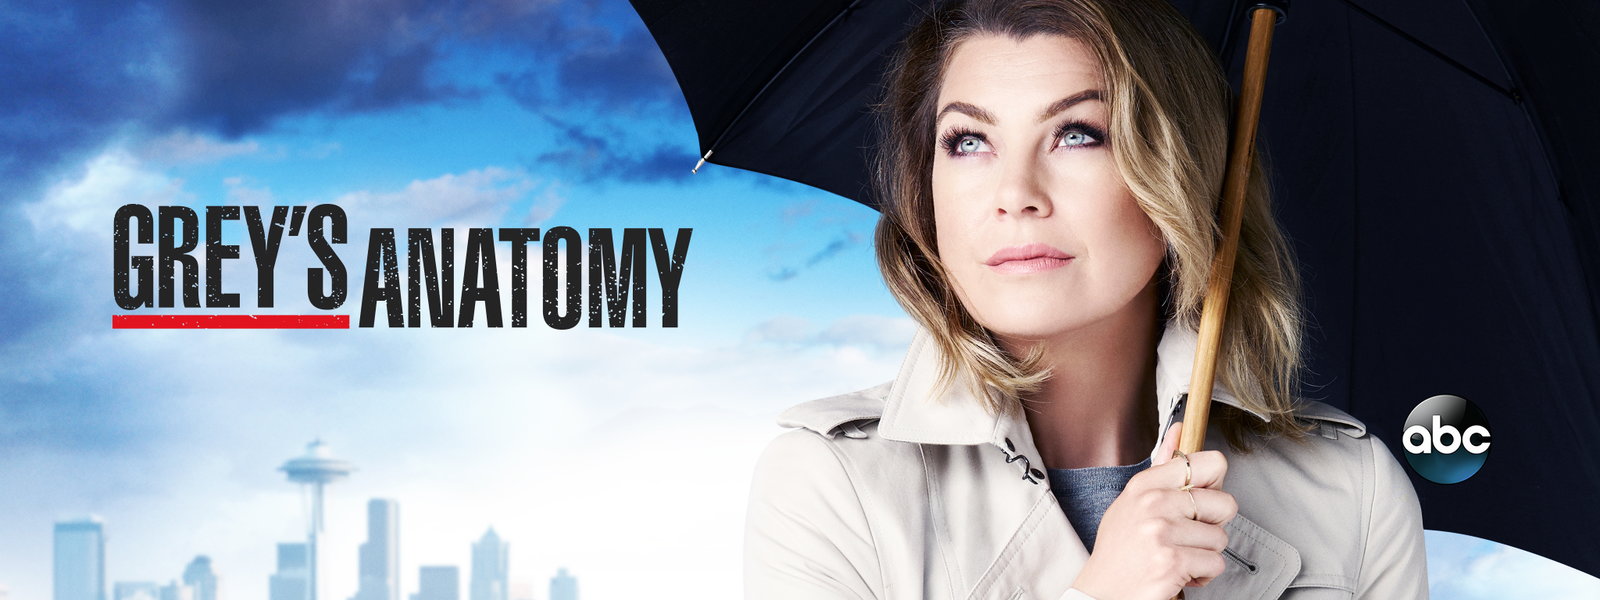 Grey's Anatomy #11